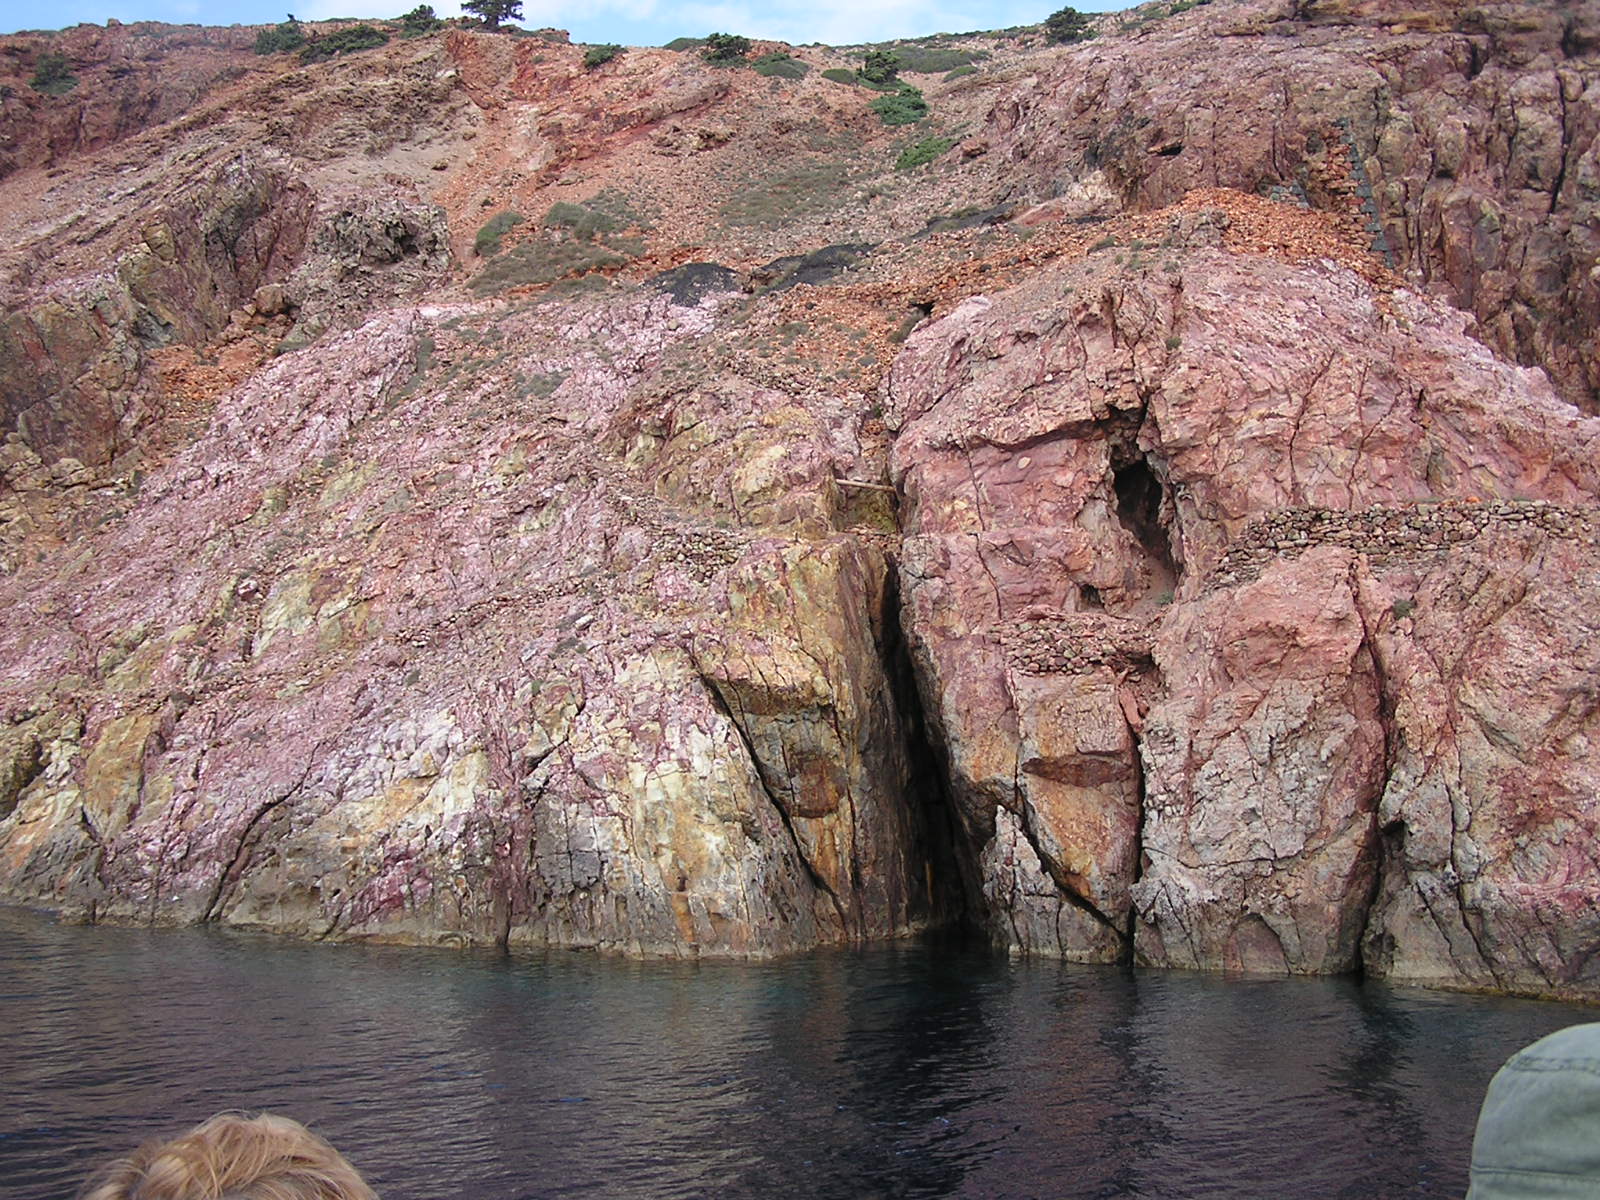 Milos partvonala mentén számos helyen megfigyelhető a színek kavalkádja, itt is a vörös, a rózsaszín, a sárga és a szürke megannyi árnyalata